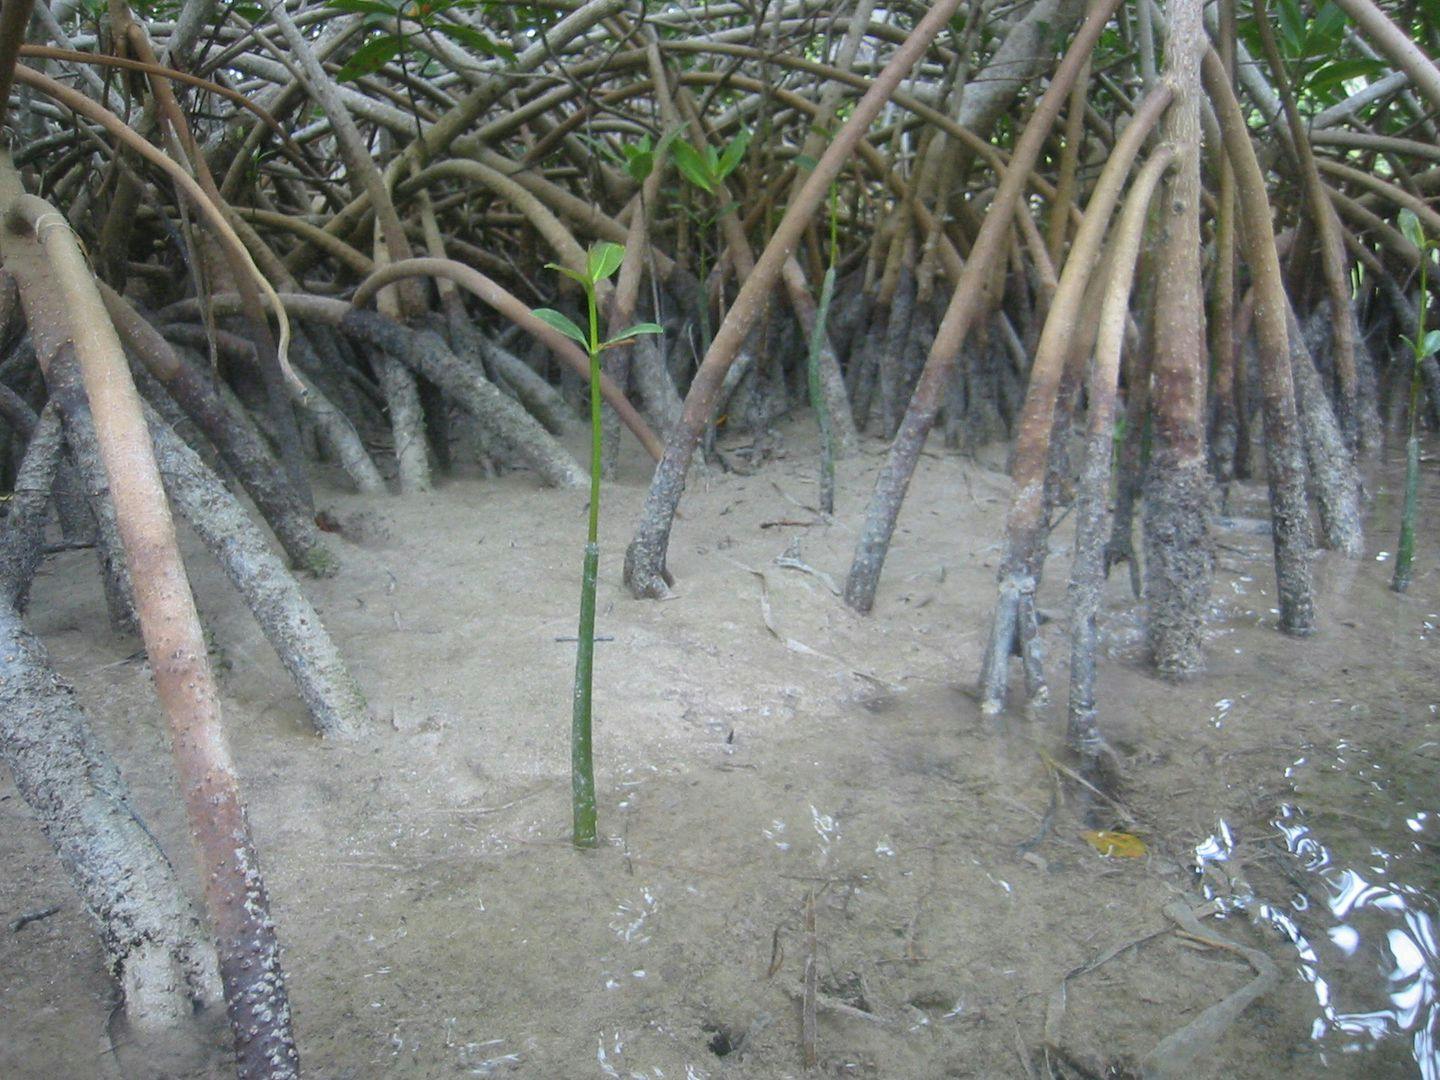 Mangrove har støttestammer som gjør dem stabile i mudderet. Foto: Ronald Toppe